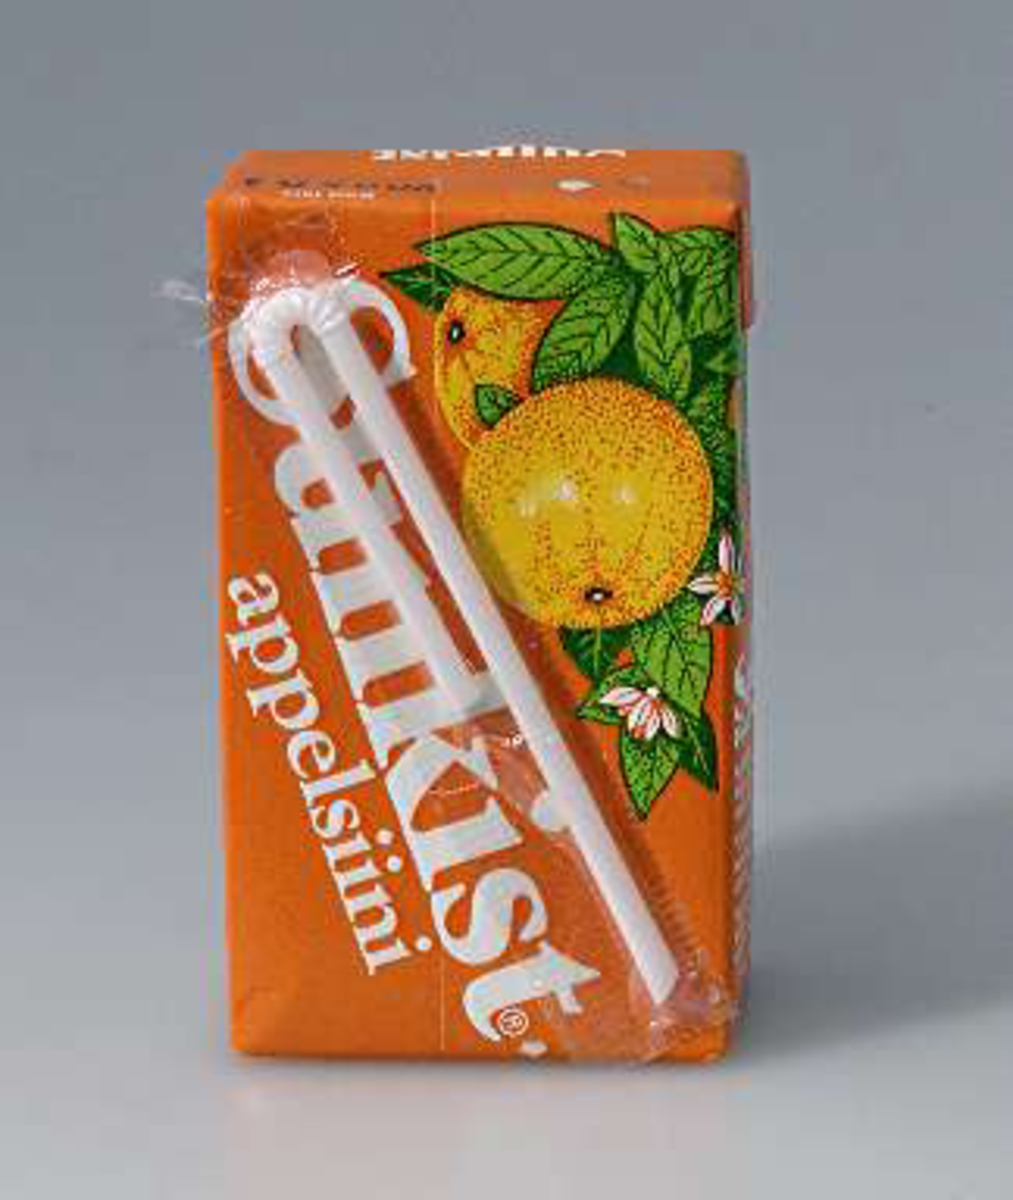 Orangefärgad rektangulär förpackning av vaxad papp med vit text: Sunkist apelsin. På baksidan sitter ett sugrör i plast fastklistrat. Hål på ovansidan för sugrör.